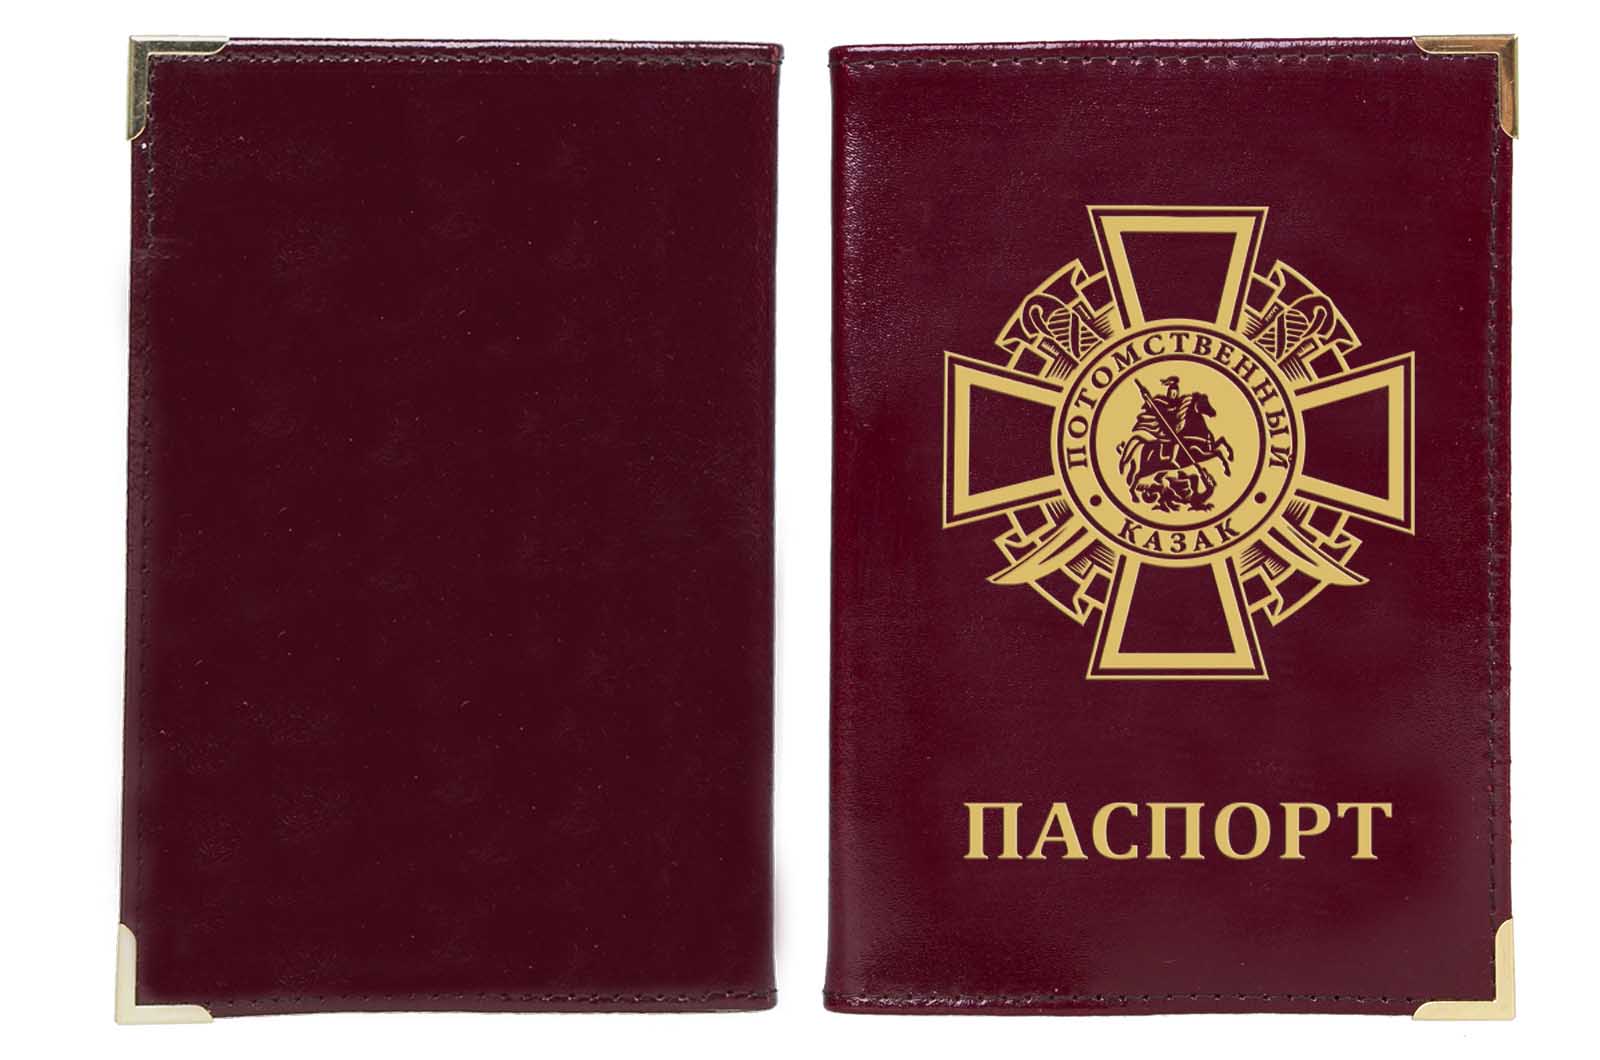 Купить обложку на паспорт "Потомственный казак"